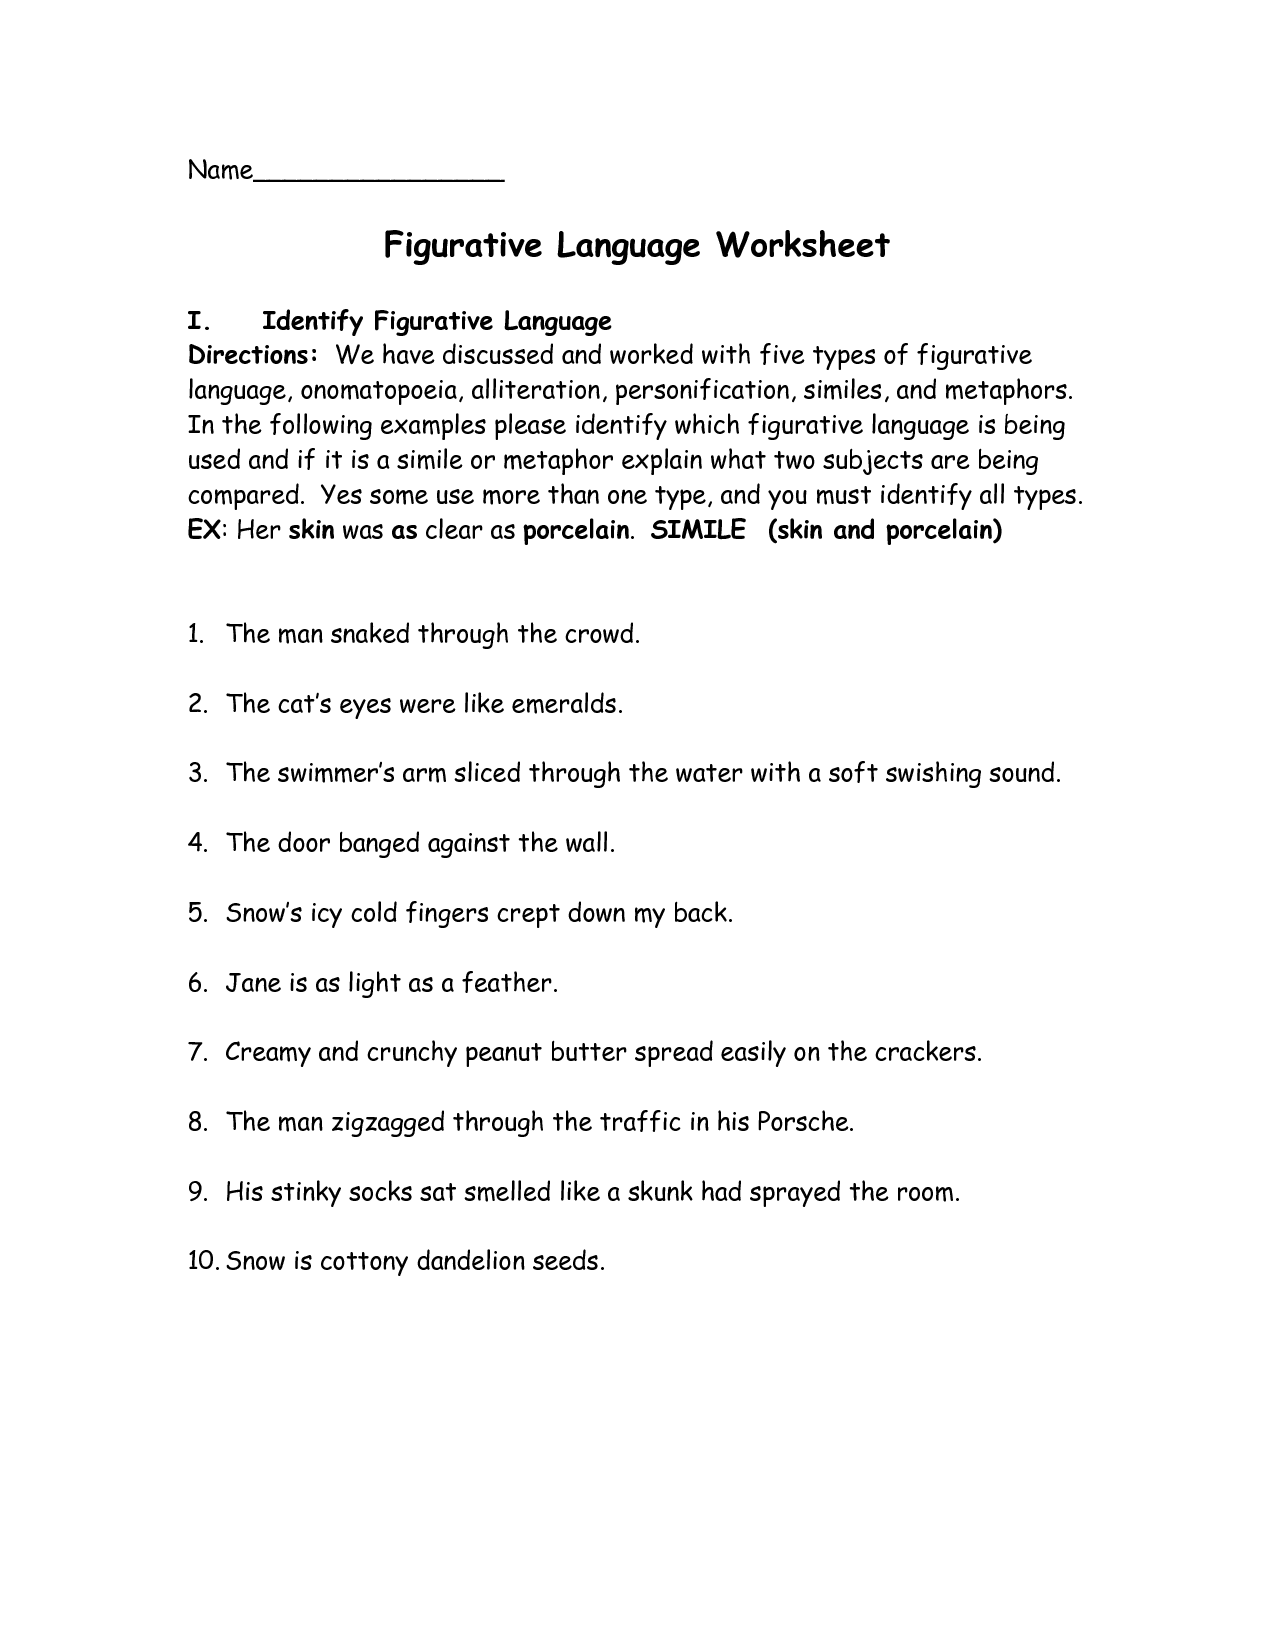 Figurative Language Worksheets Image